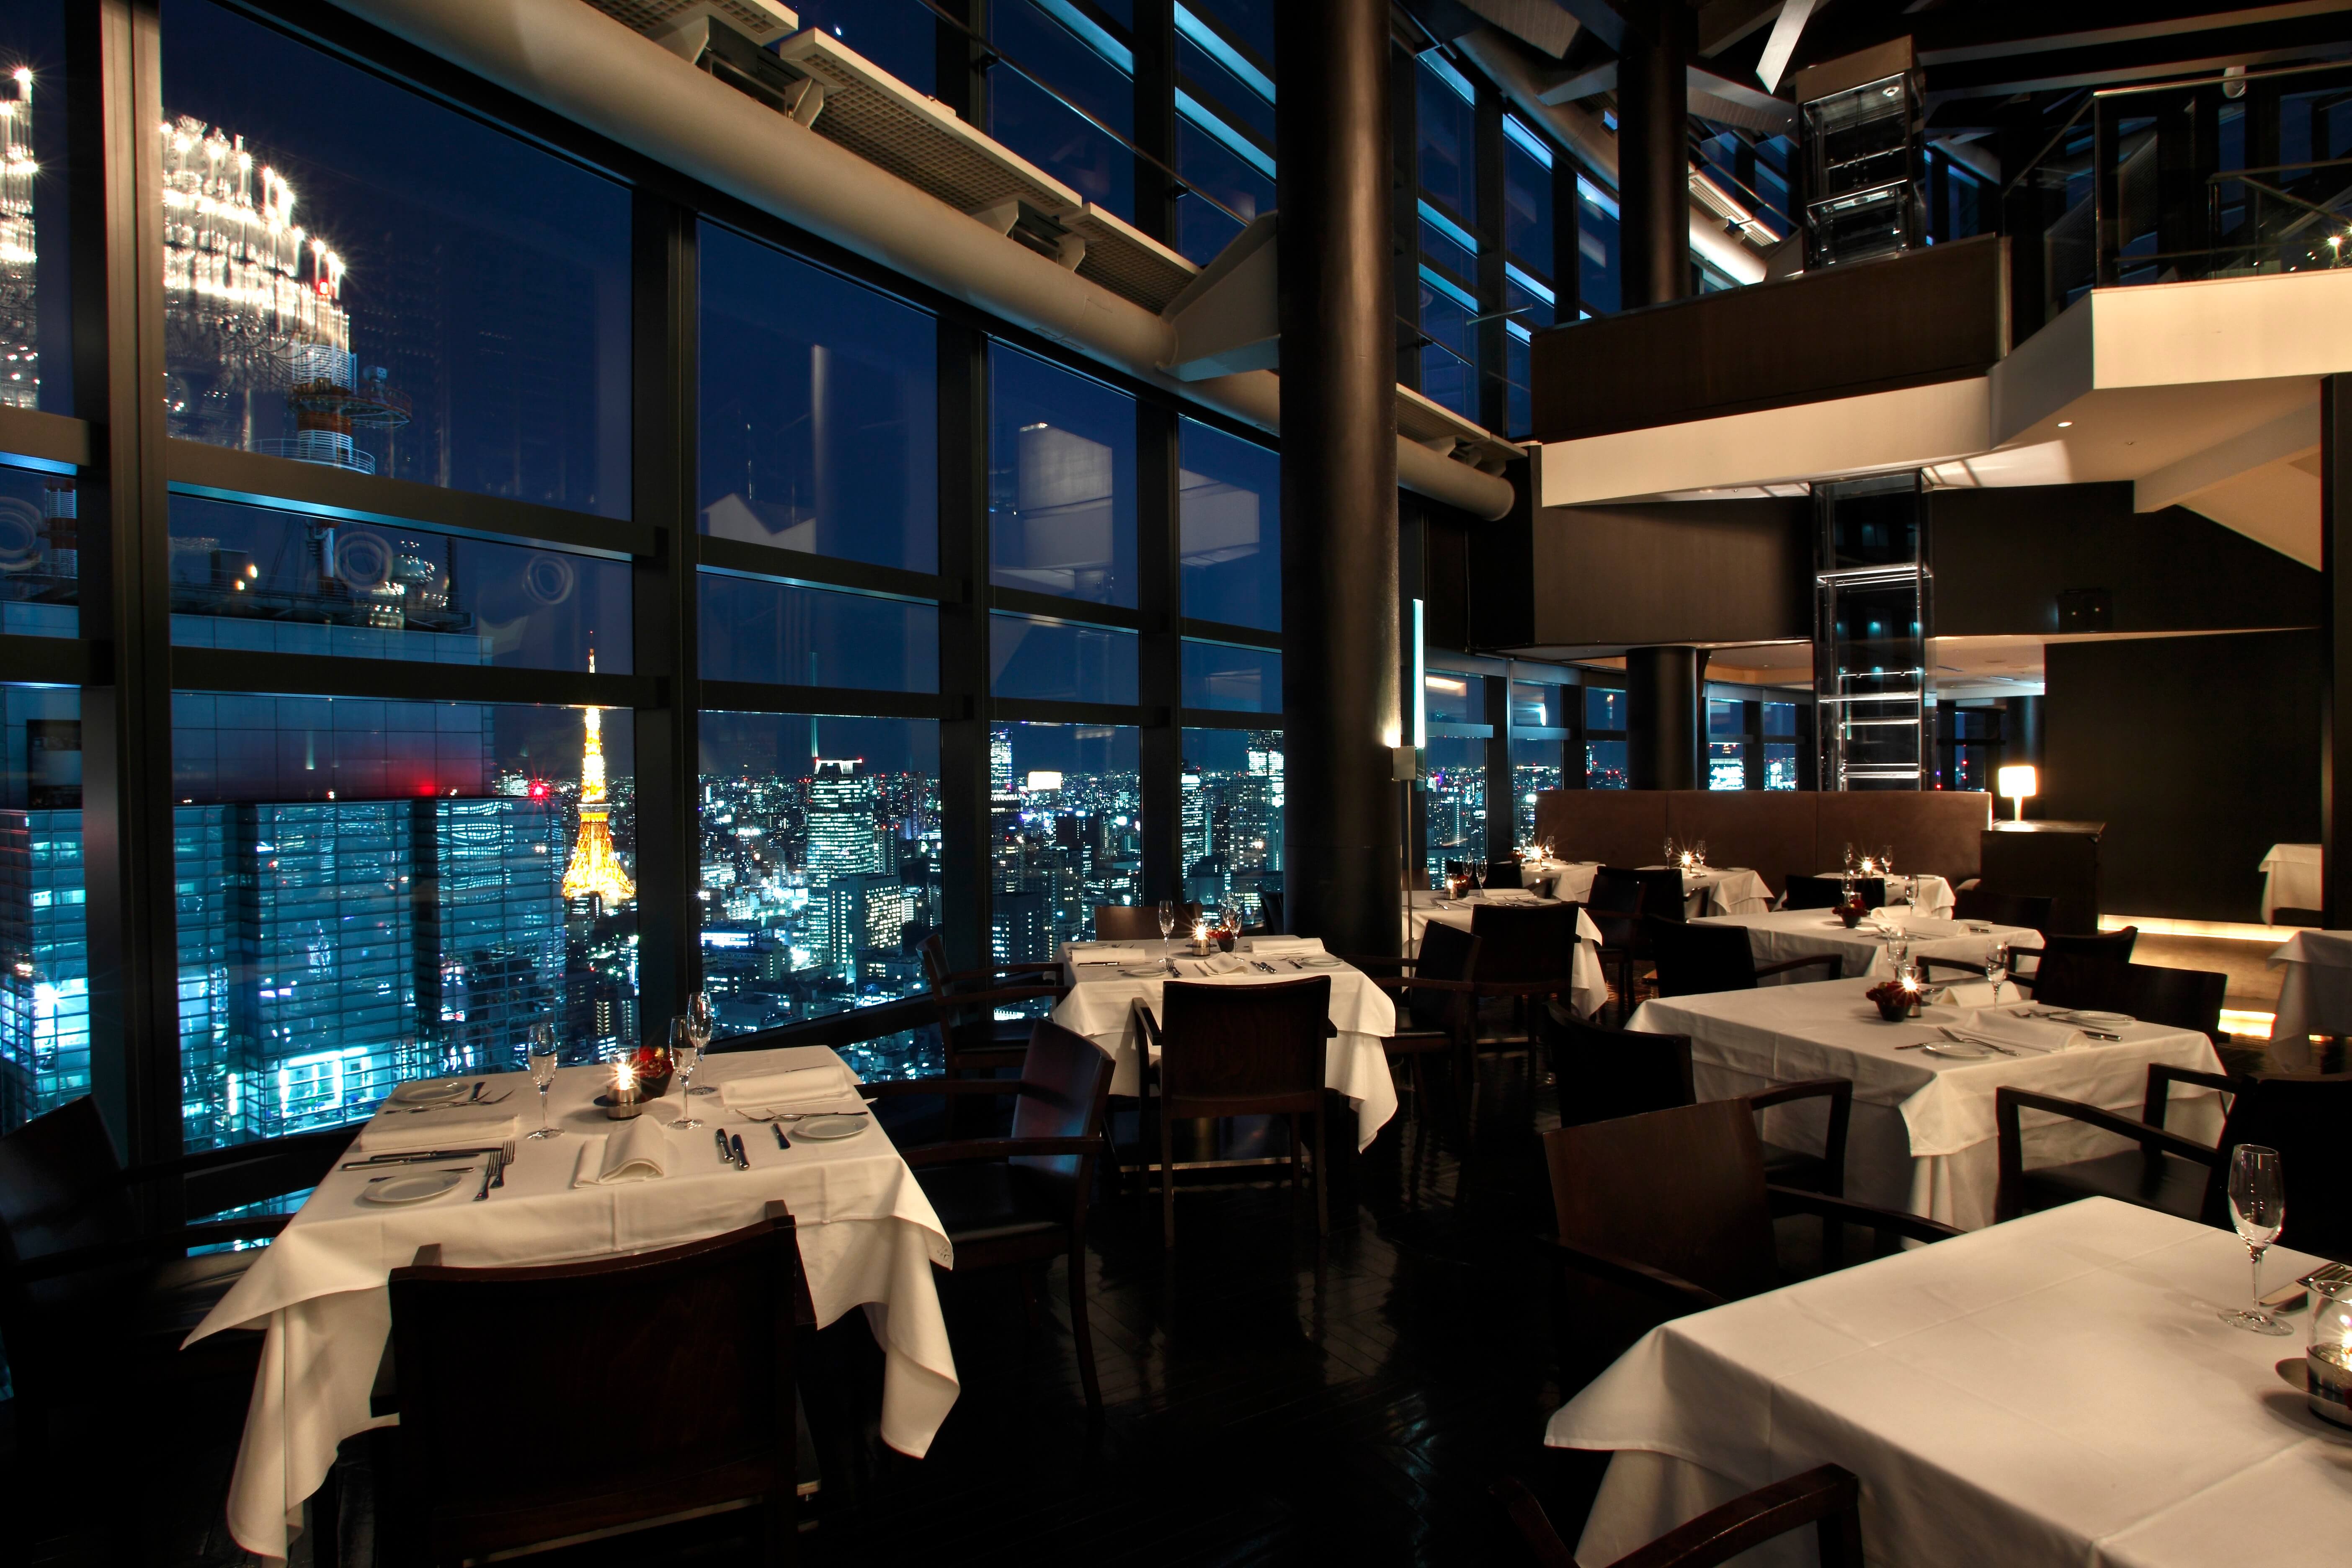 汐留 大人ムード満載の高級レストランにレンタルスペースが登場 Fish Bank Tokyo Feeeel